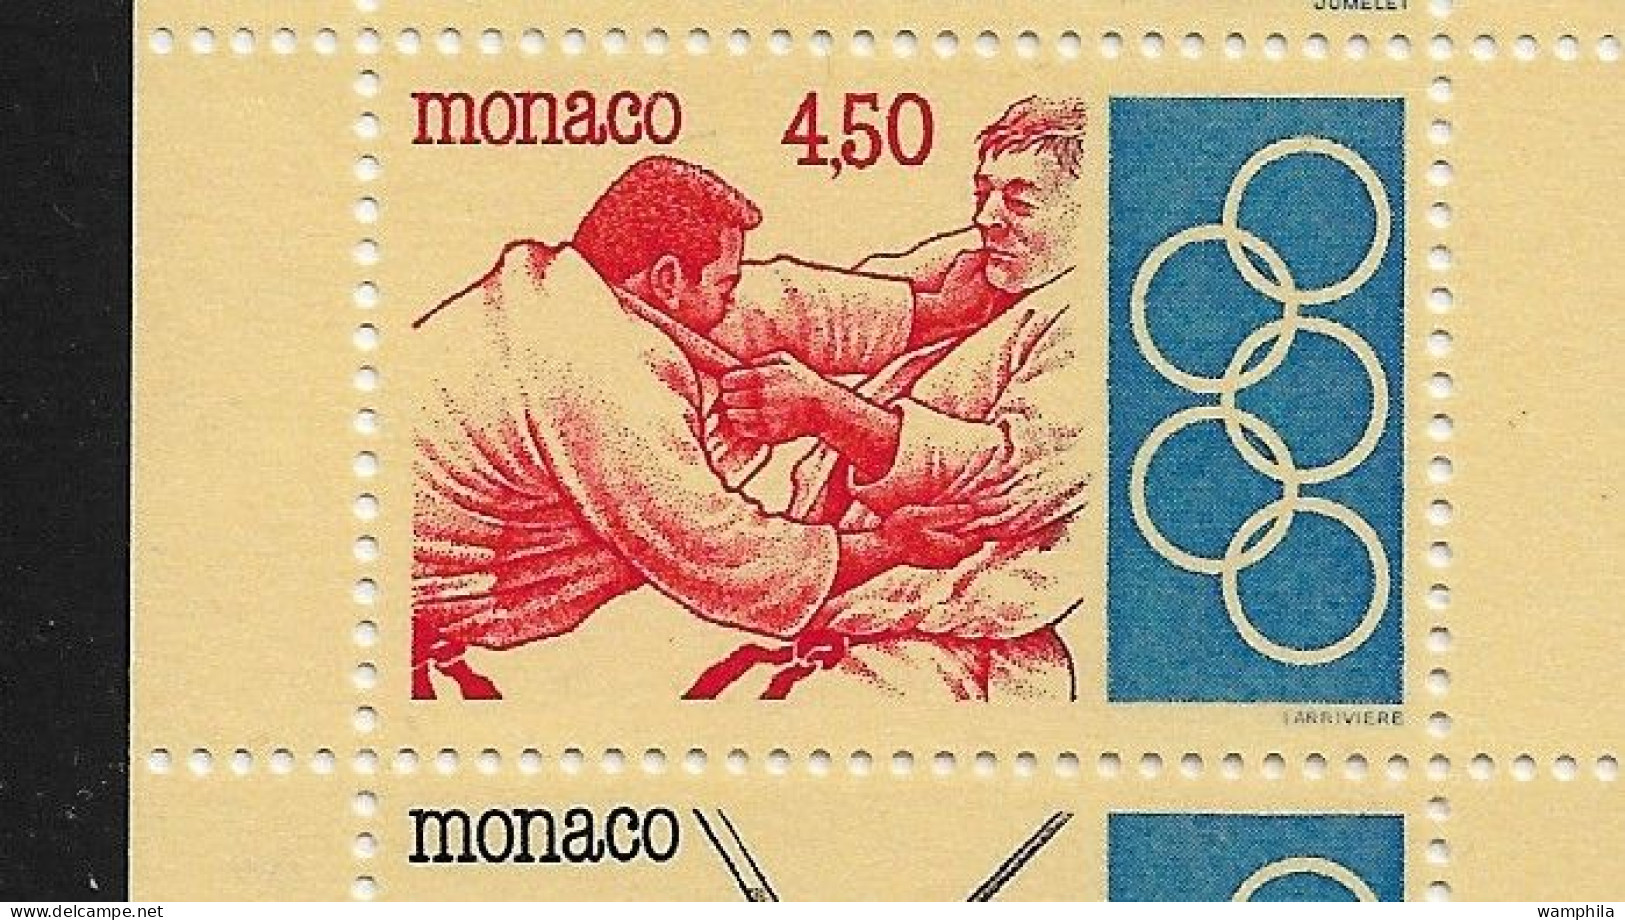 Monaco 1993. Carnet N°11, J.O .Anneaux, Judo, Escrime, Haies, Tir à L'arc, Haltérophilie. - Fechten